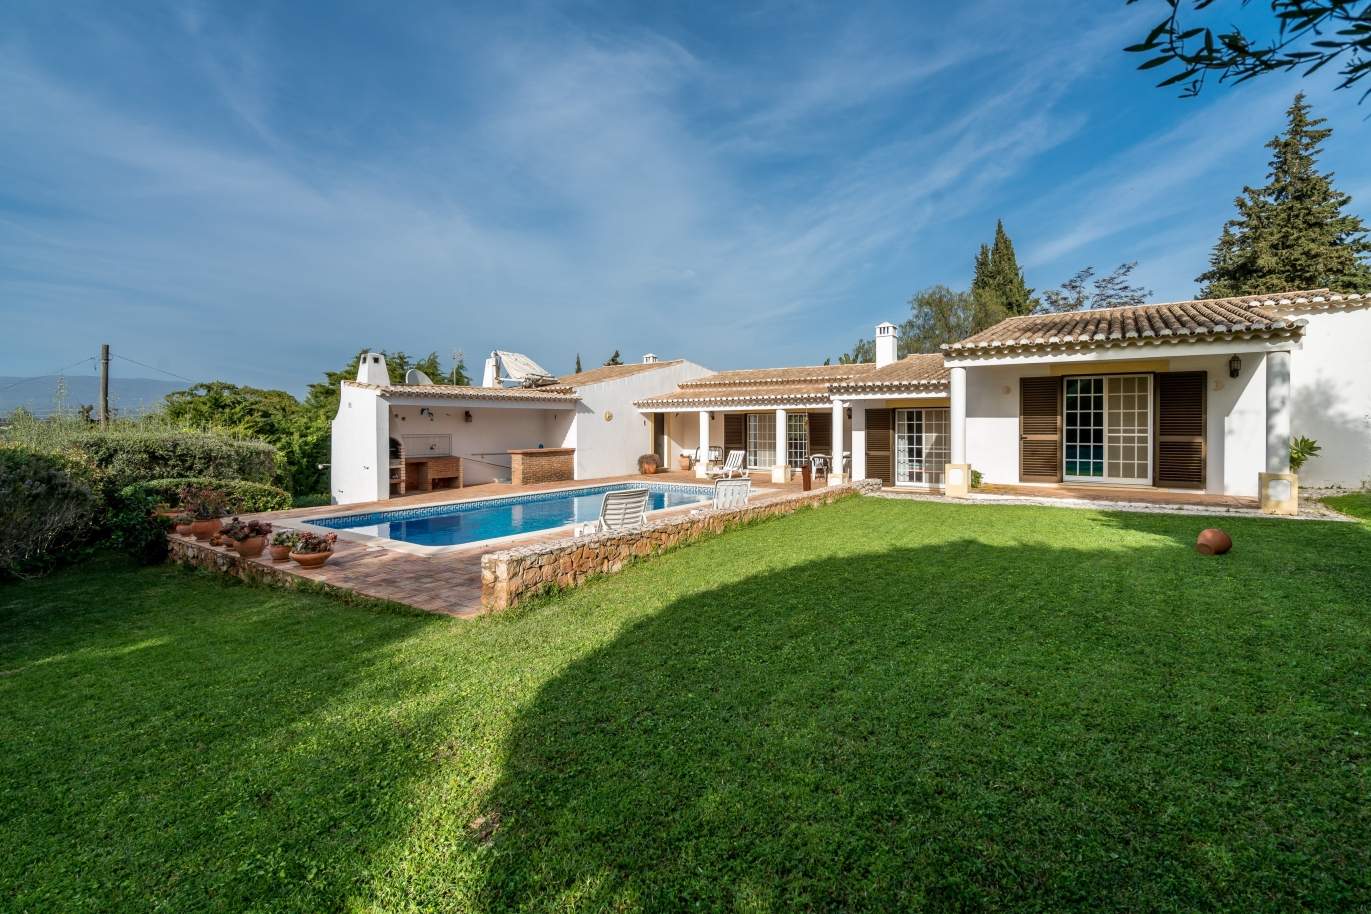 Casa en venta con piscina y jardín en alvor, Algarve, Portugal_135751